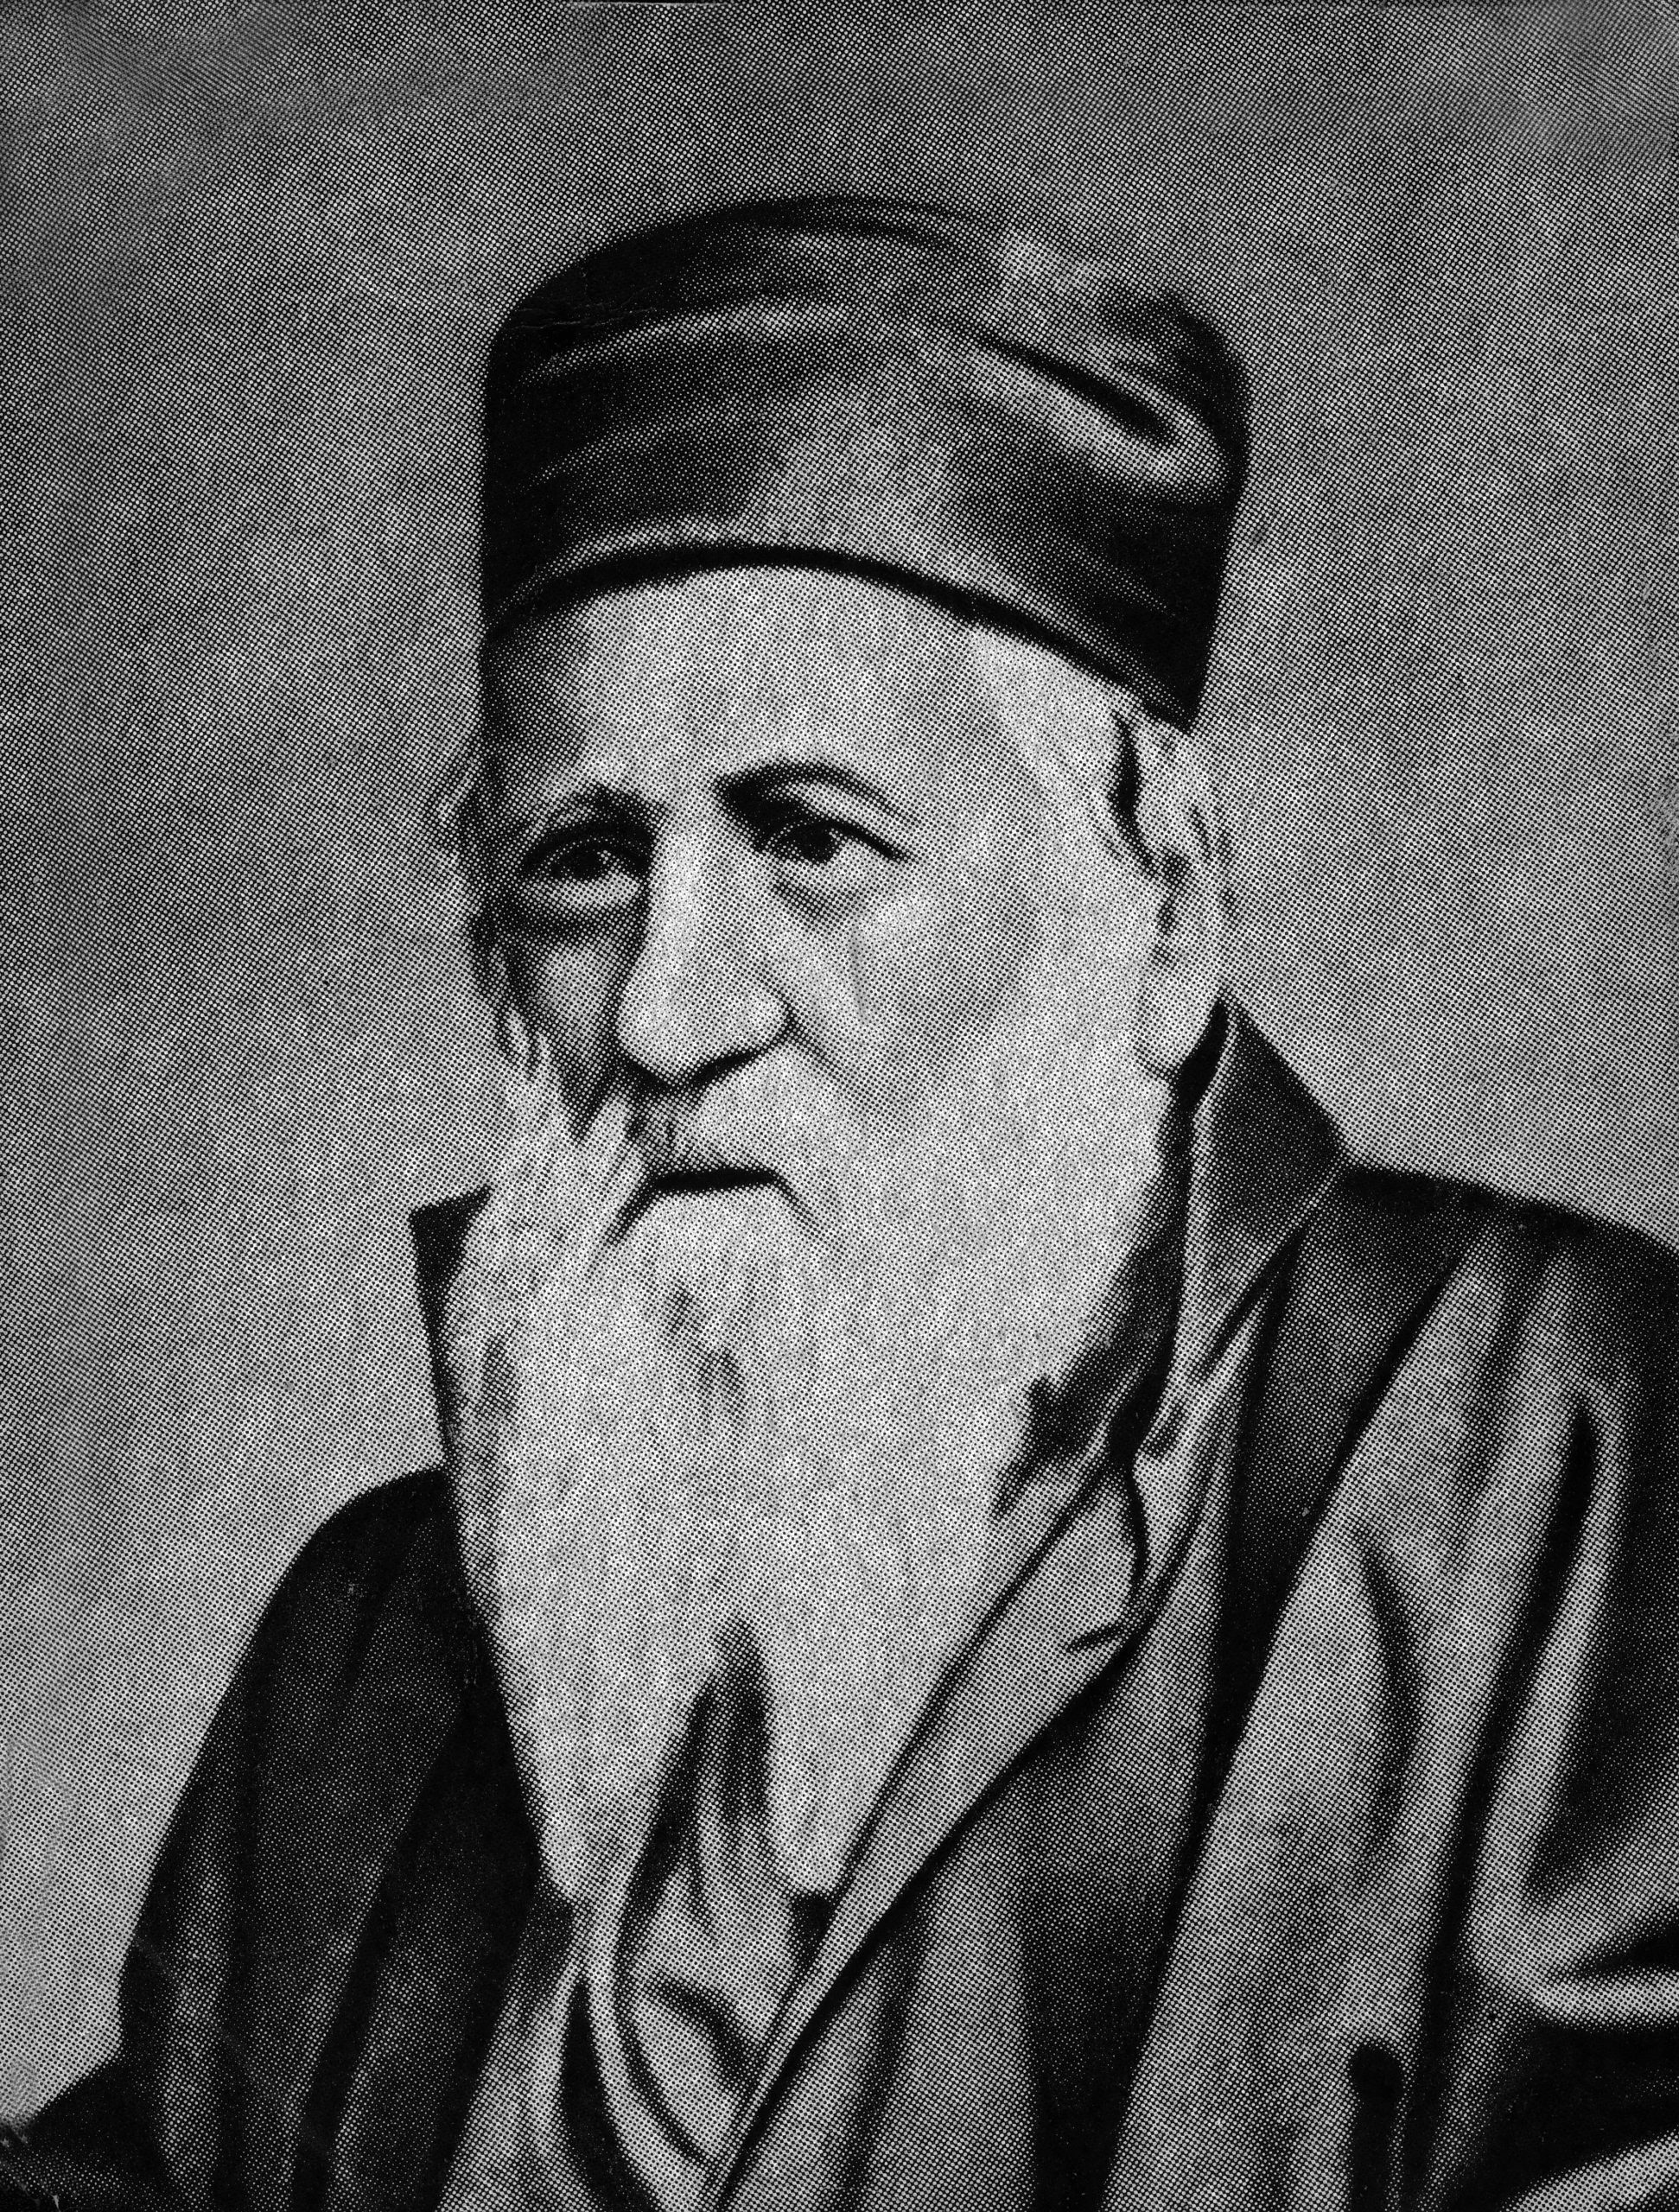 Rabbi Judah Alkalai, 1798-1878